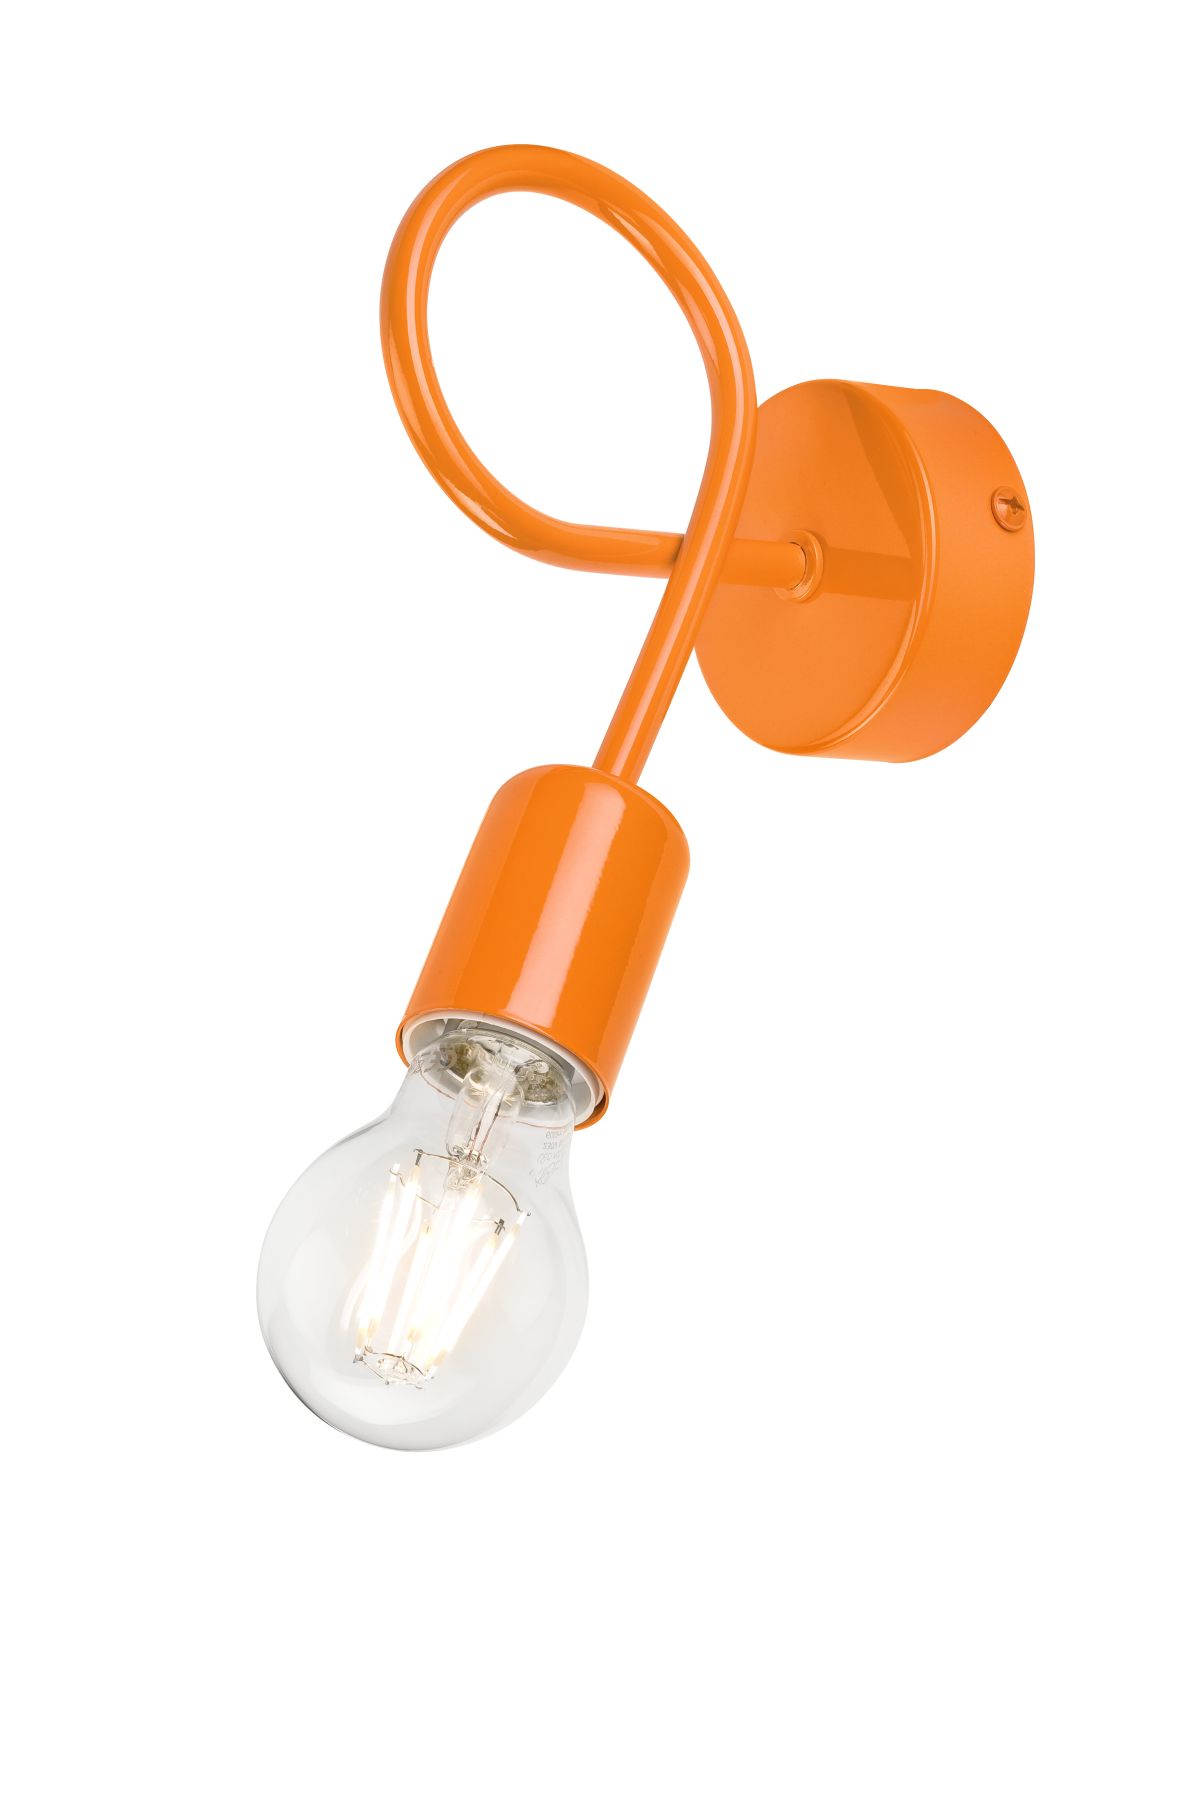 Wandlampe Orange Modern flexibel Metall Lampe